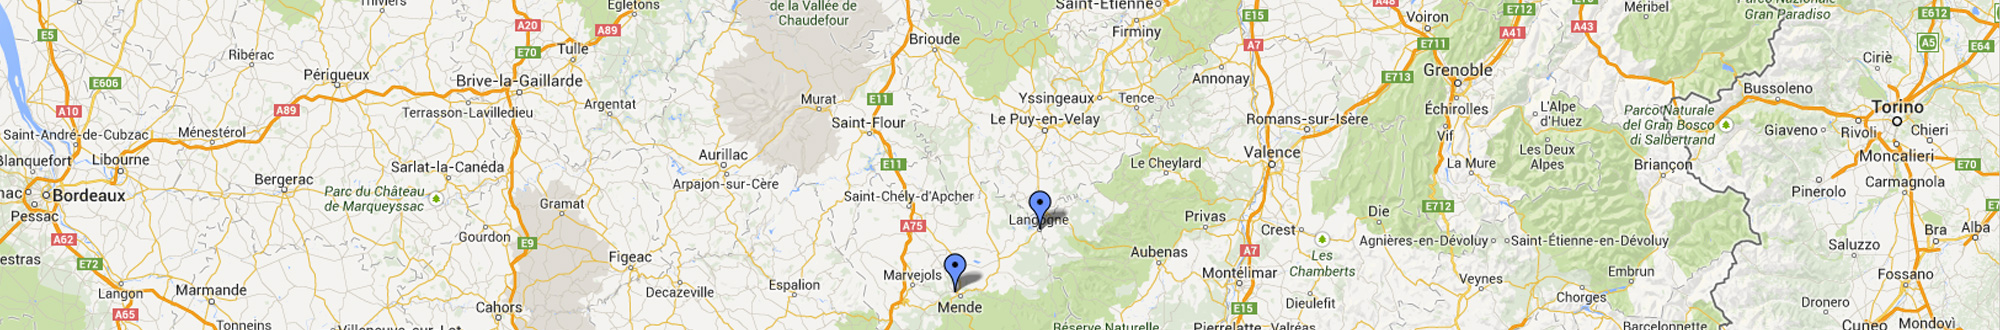 Contactez électricien en Lozère, Ardèche, Hérault, Haute-Loire ou Aveyron